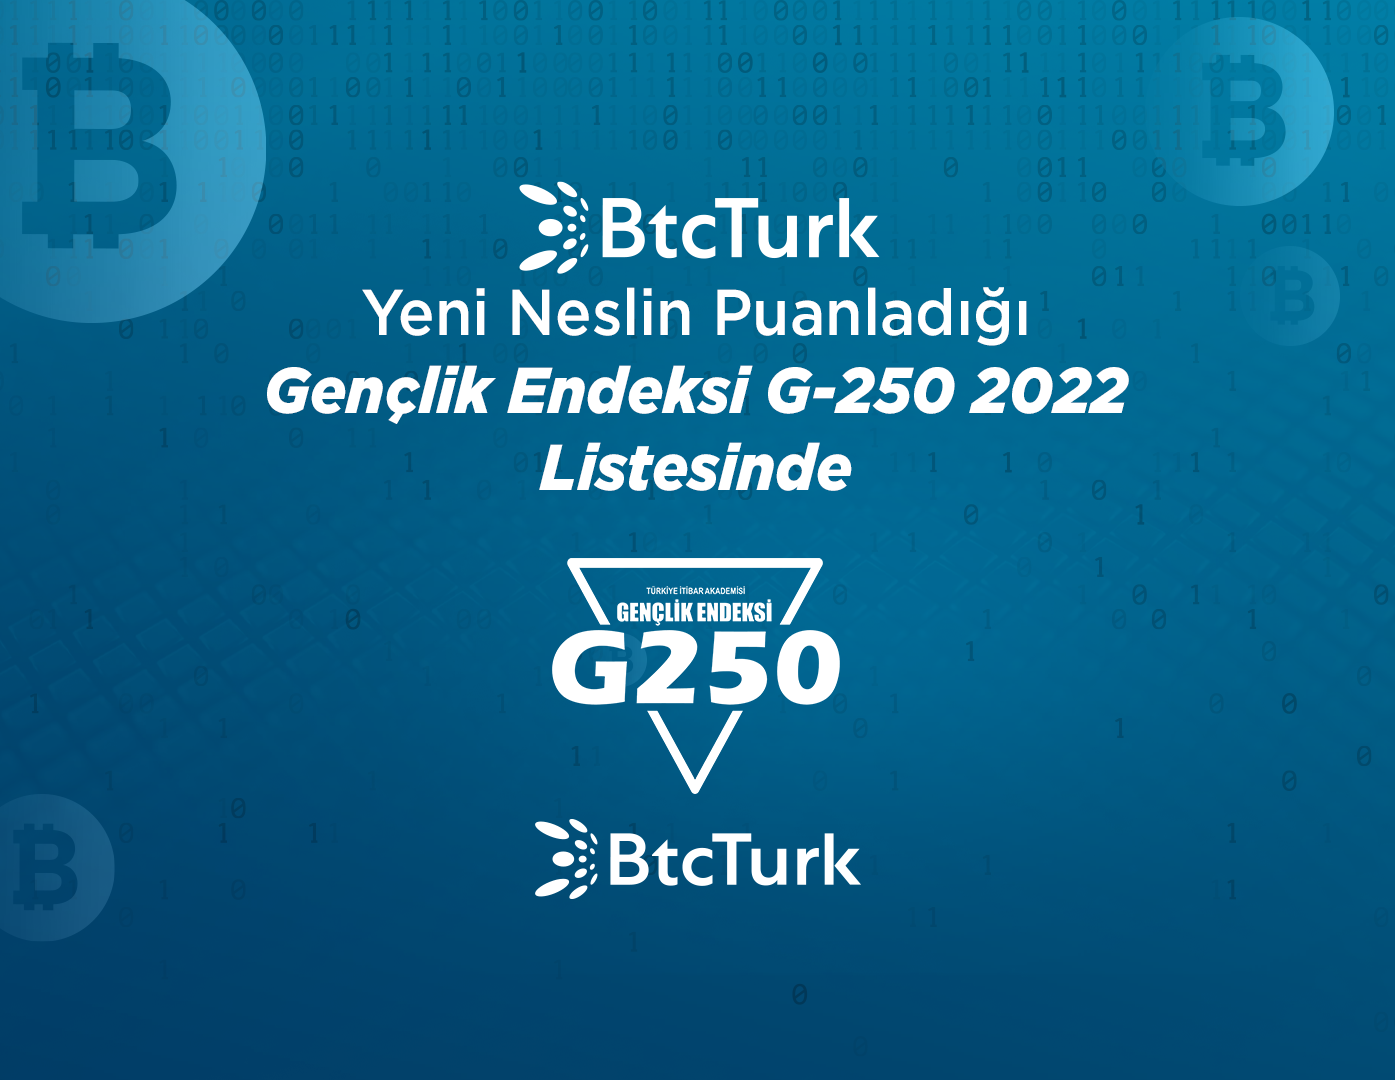 BtcTurk, Gençlik Endeksi G-250’nin 2022 Sonuçlarında 52. Sırada